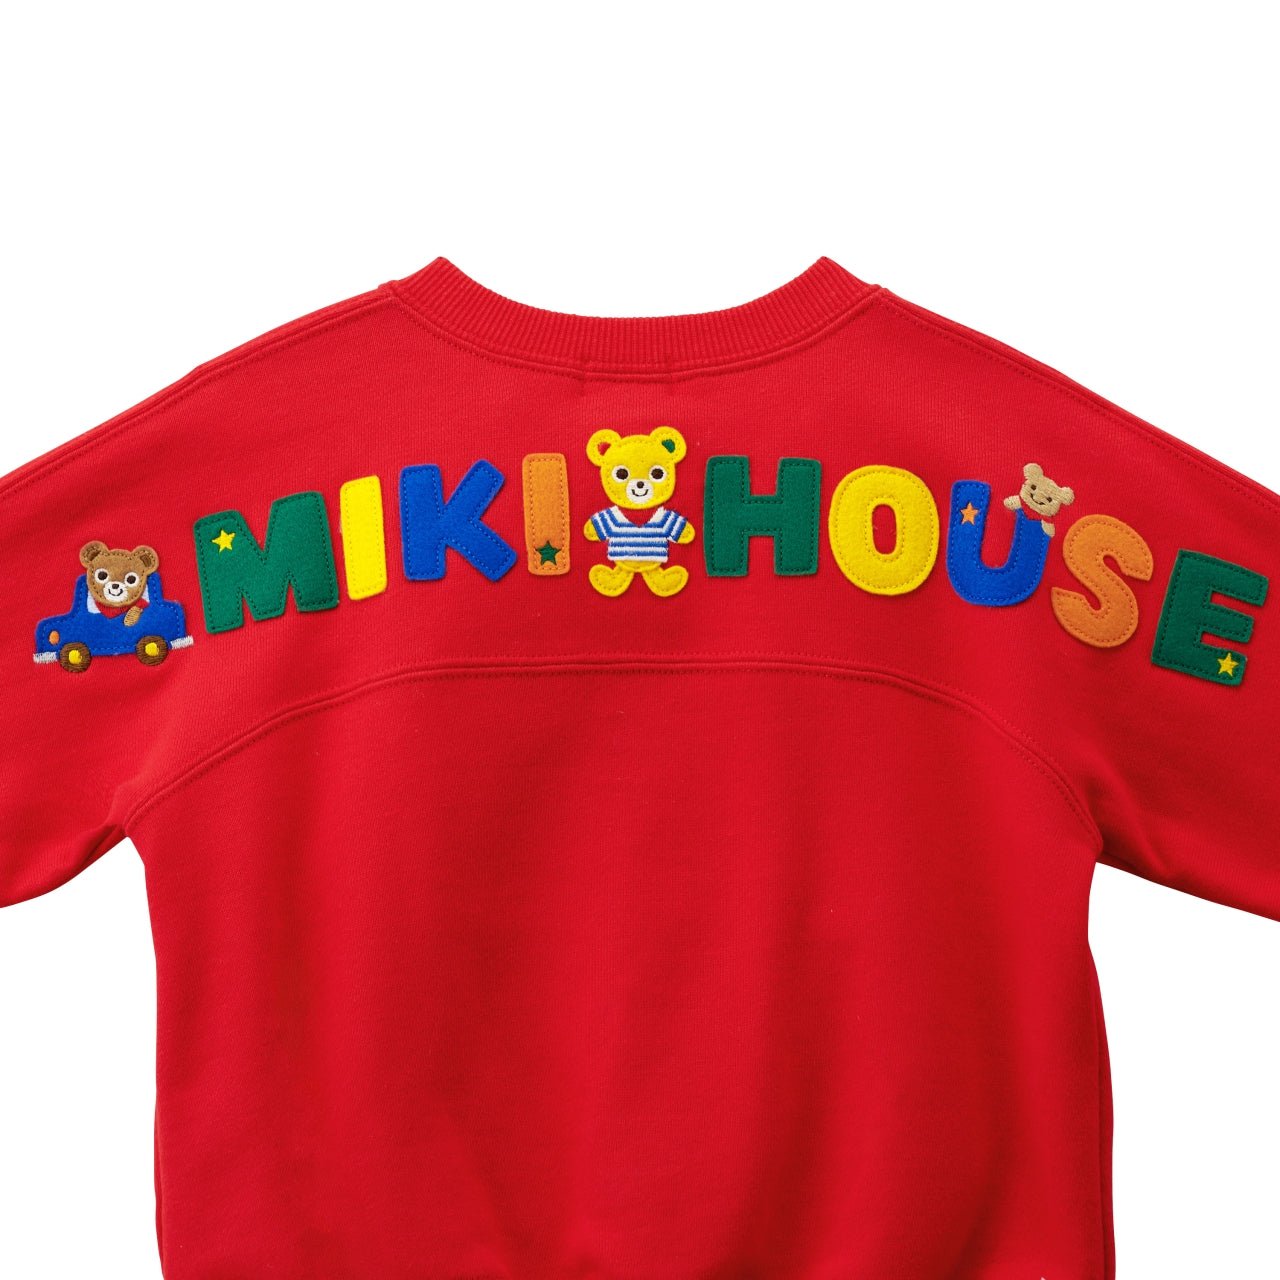 Kangaroo Pocket Sweatshirt - Pucchi - 13-5605-578-02-80